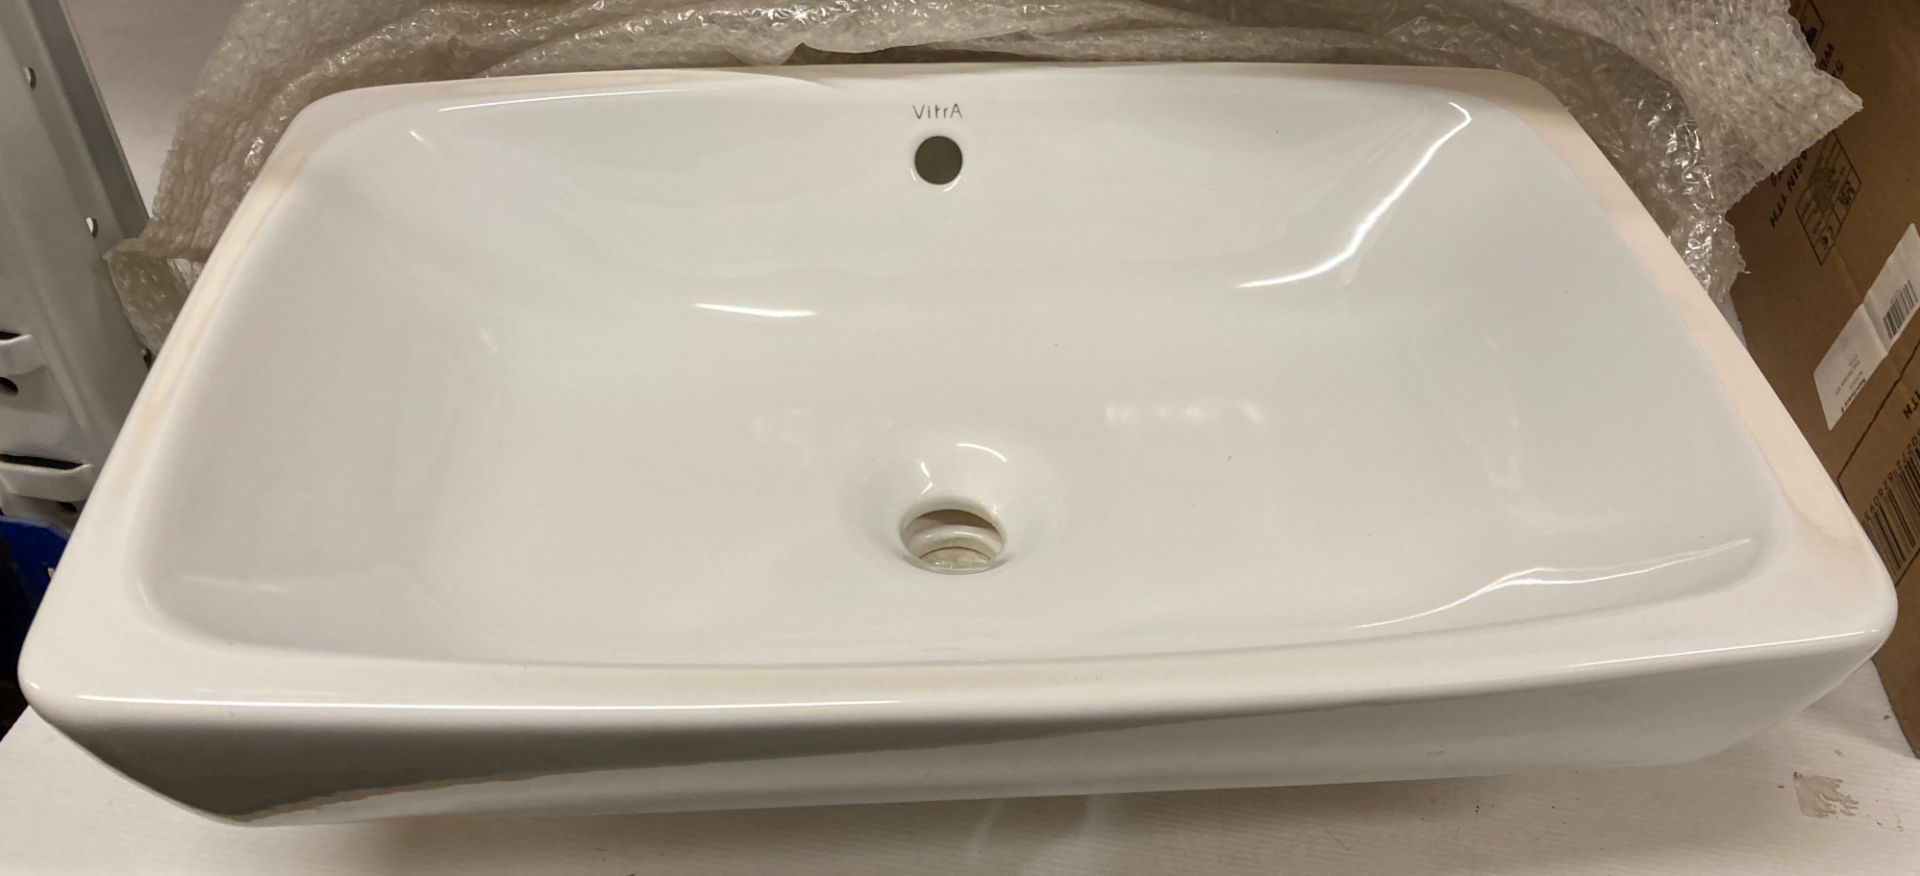 Vitra white ceramic counter top wash basin 60cm x 43cm (saleroom location: Z07)